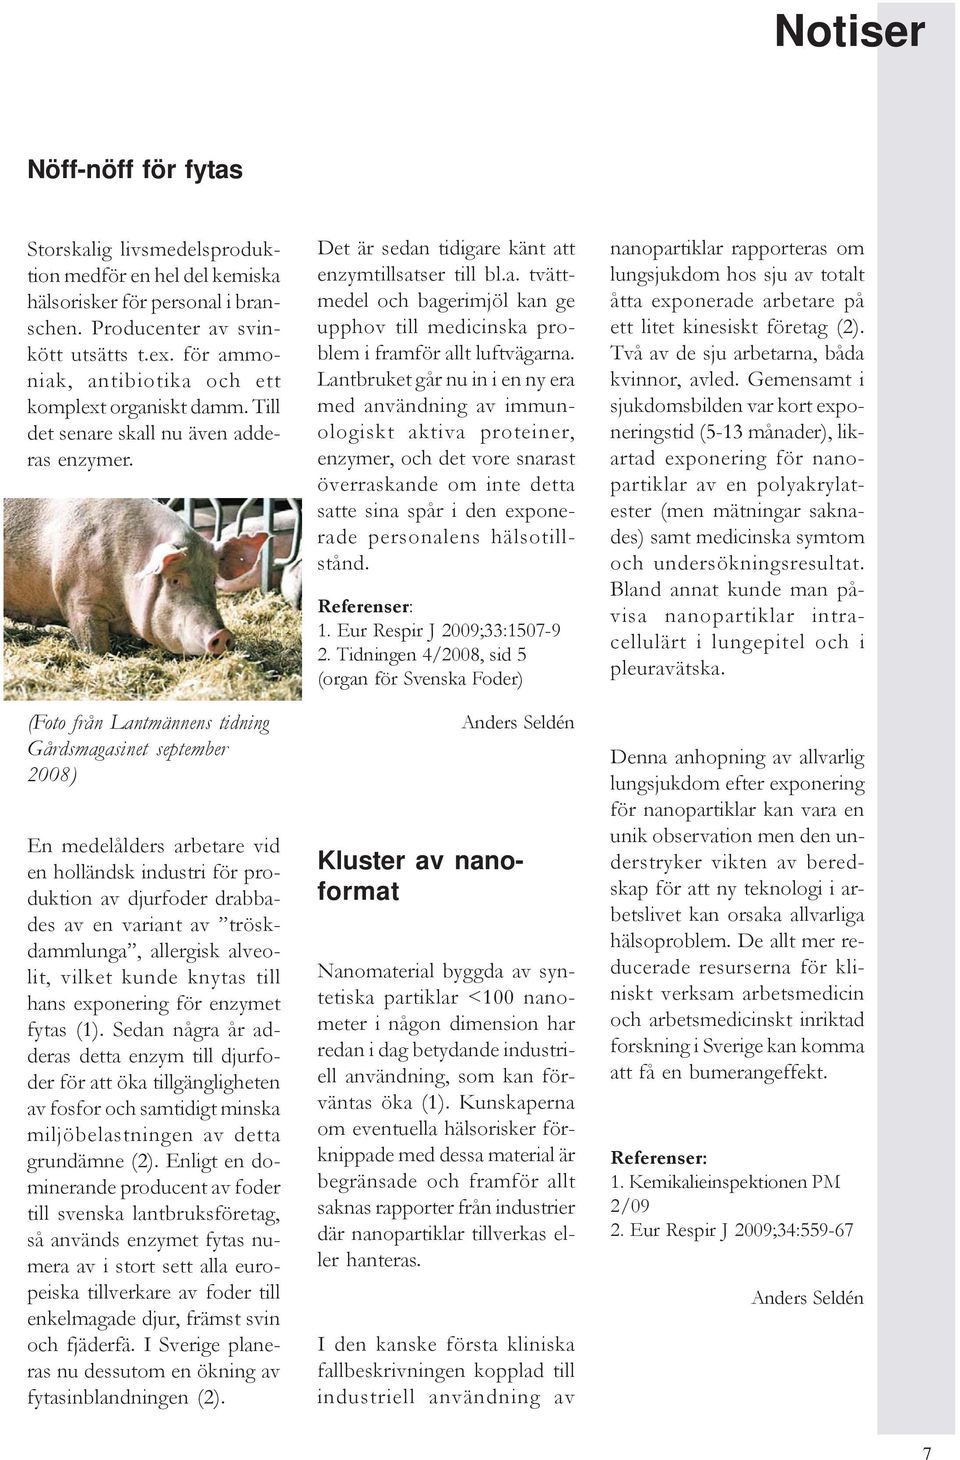 (Foto från Lantmännens tidning Gårdsmagasinet september 2008) En medelålders arbetare vid en holländsk industri för produktion av djurfoder drabbades av en variant av tröskdammlunga, allergisk